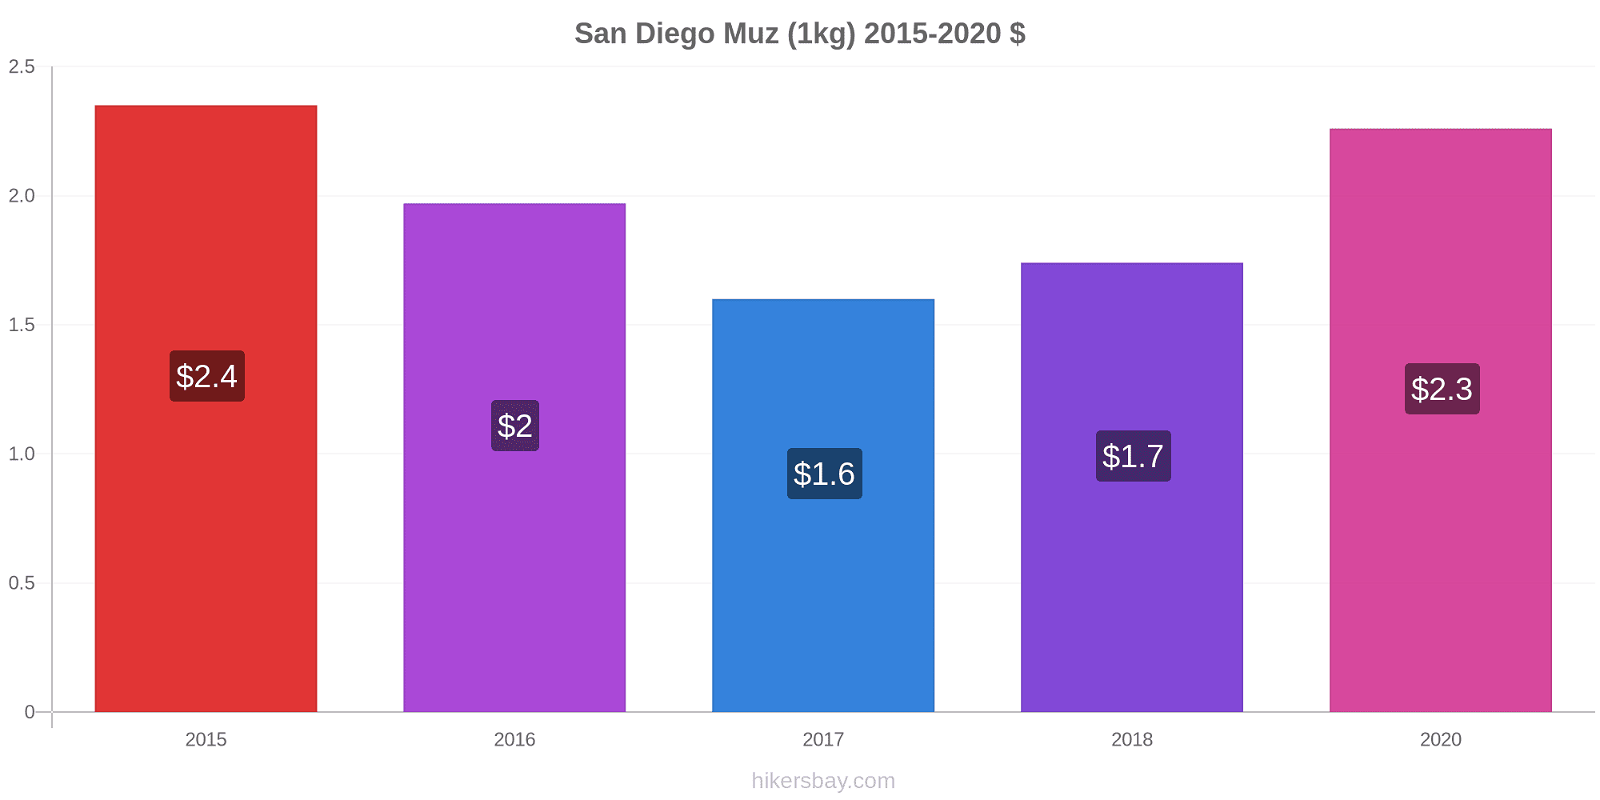 San Diego fiyat değişiklikleri Muz (1kg) hikersbay.com